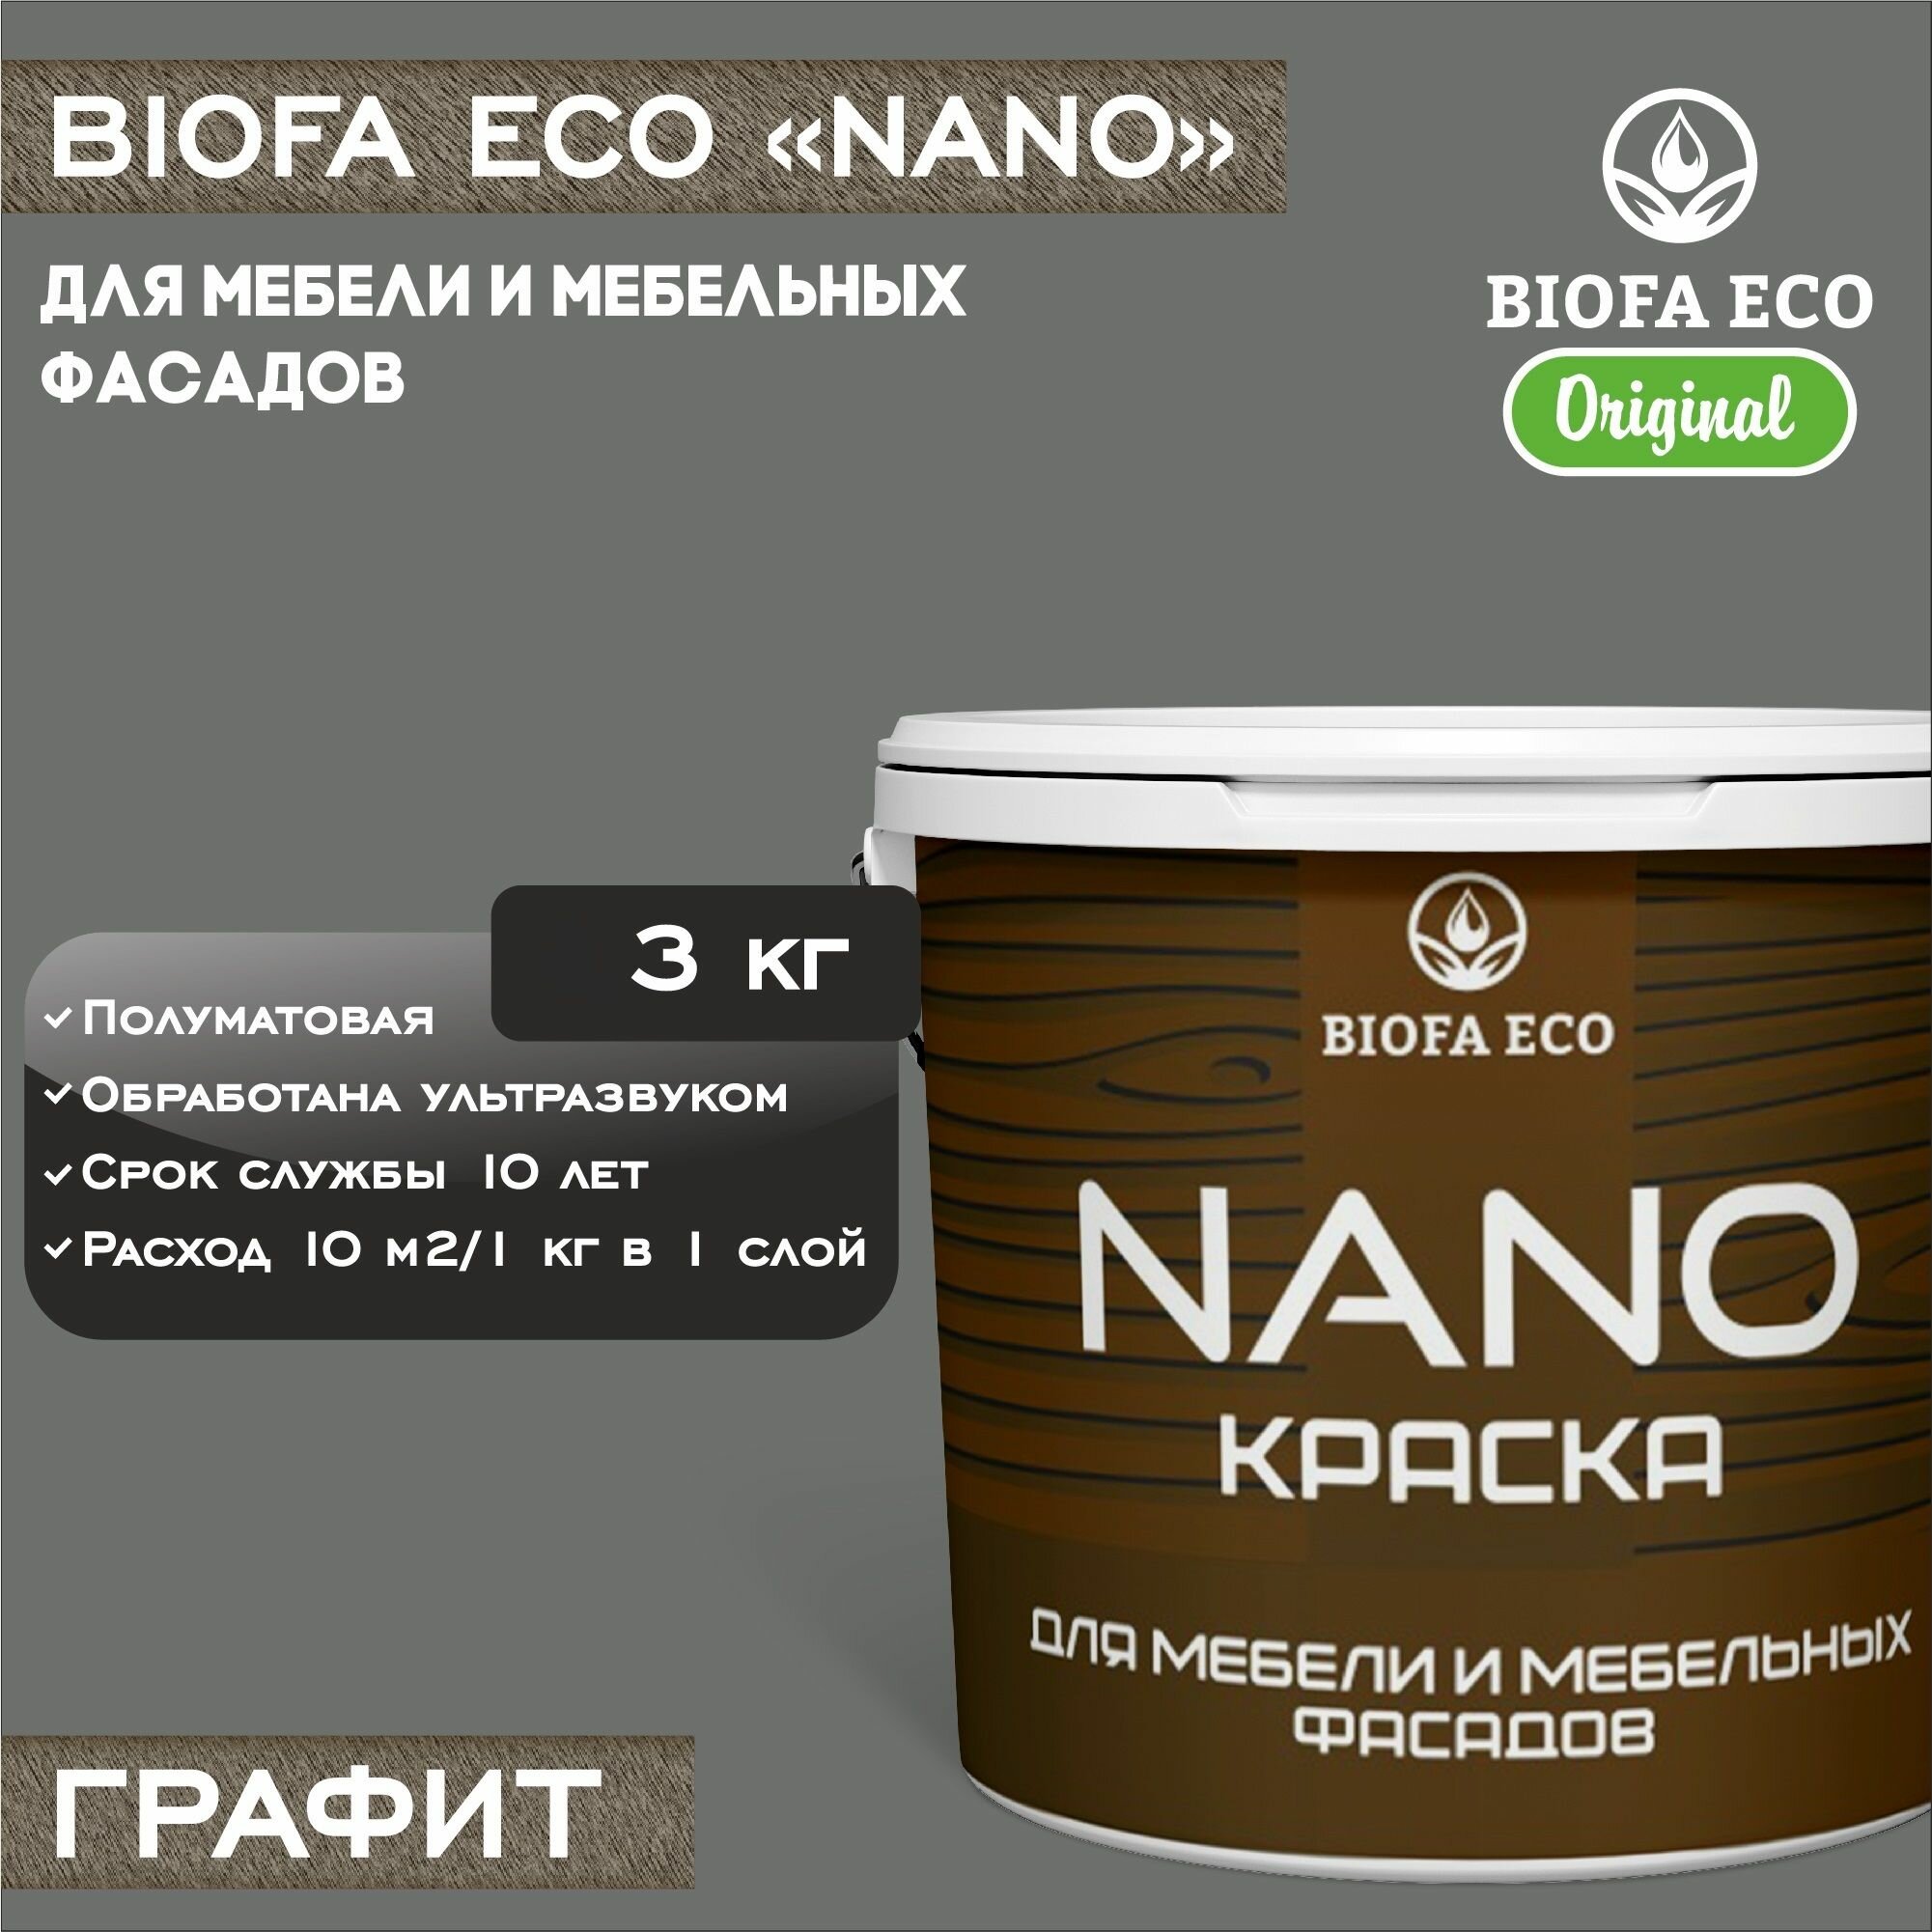 Краска BIOFA ECO NANO для мебели и мебельных фасадов, укрывистая, полуматовая, цвет графит, 3 кг